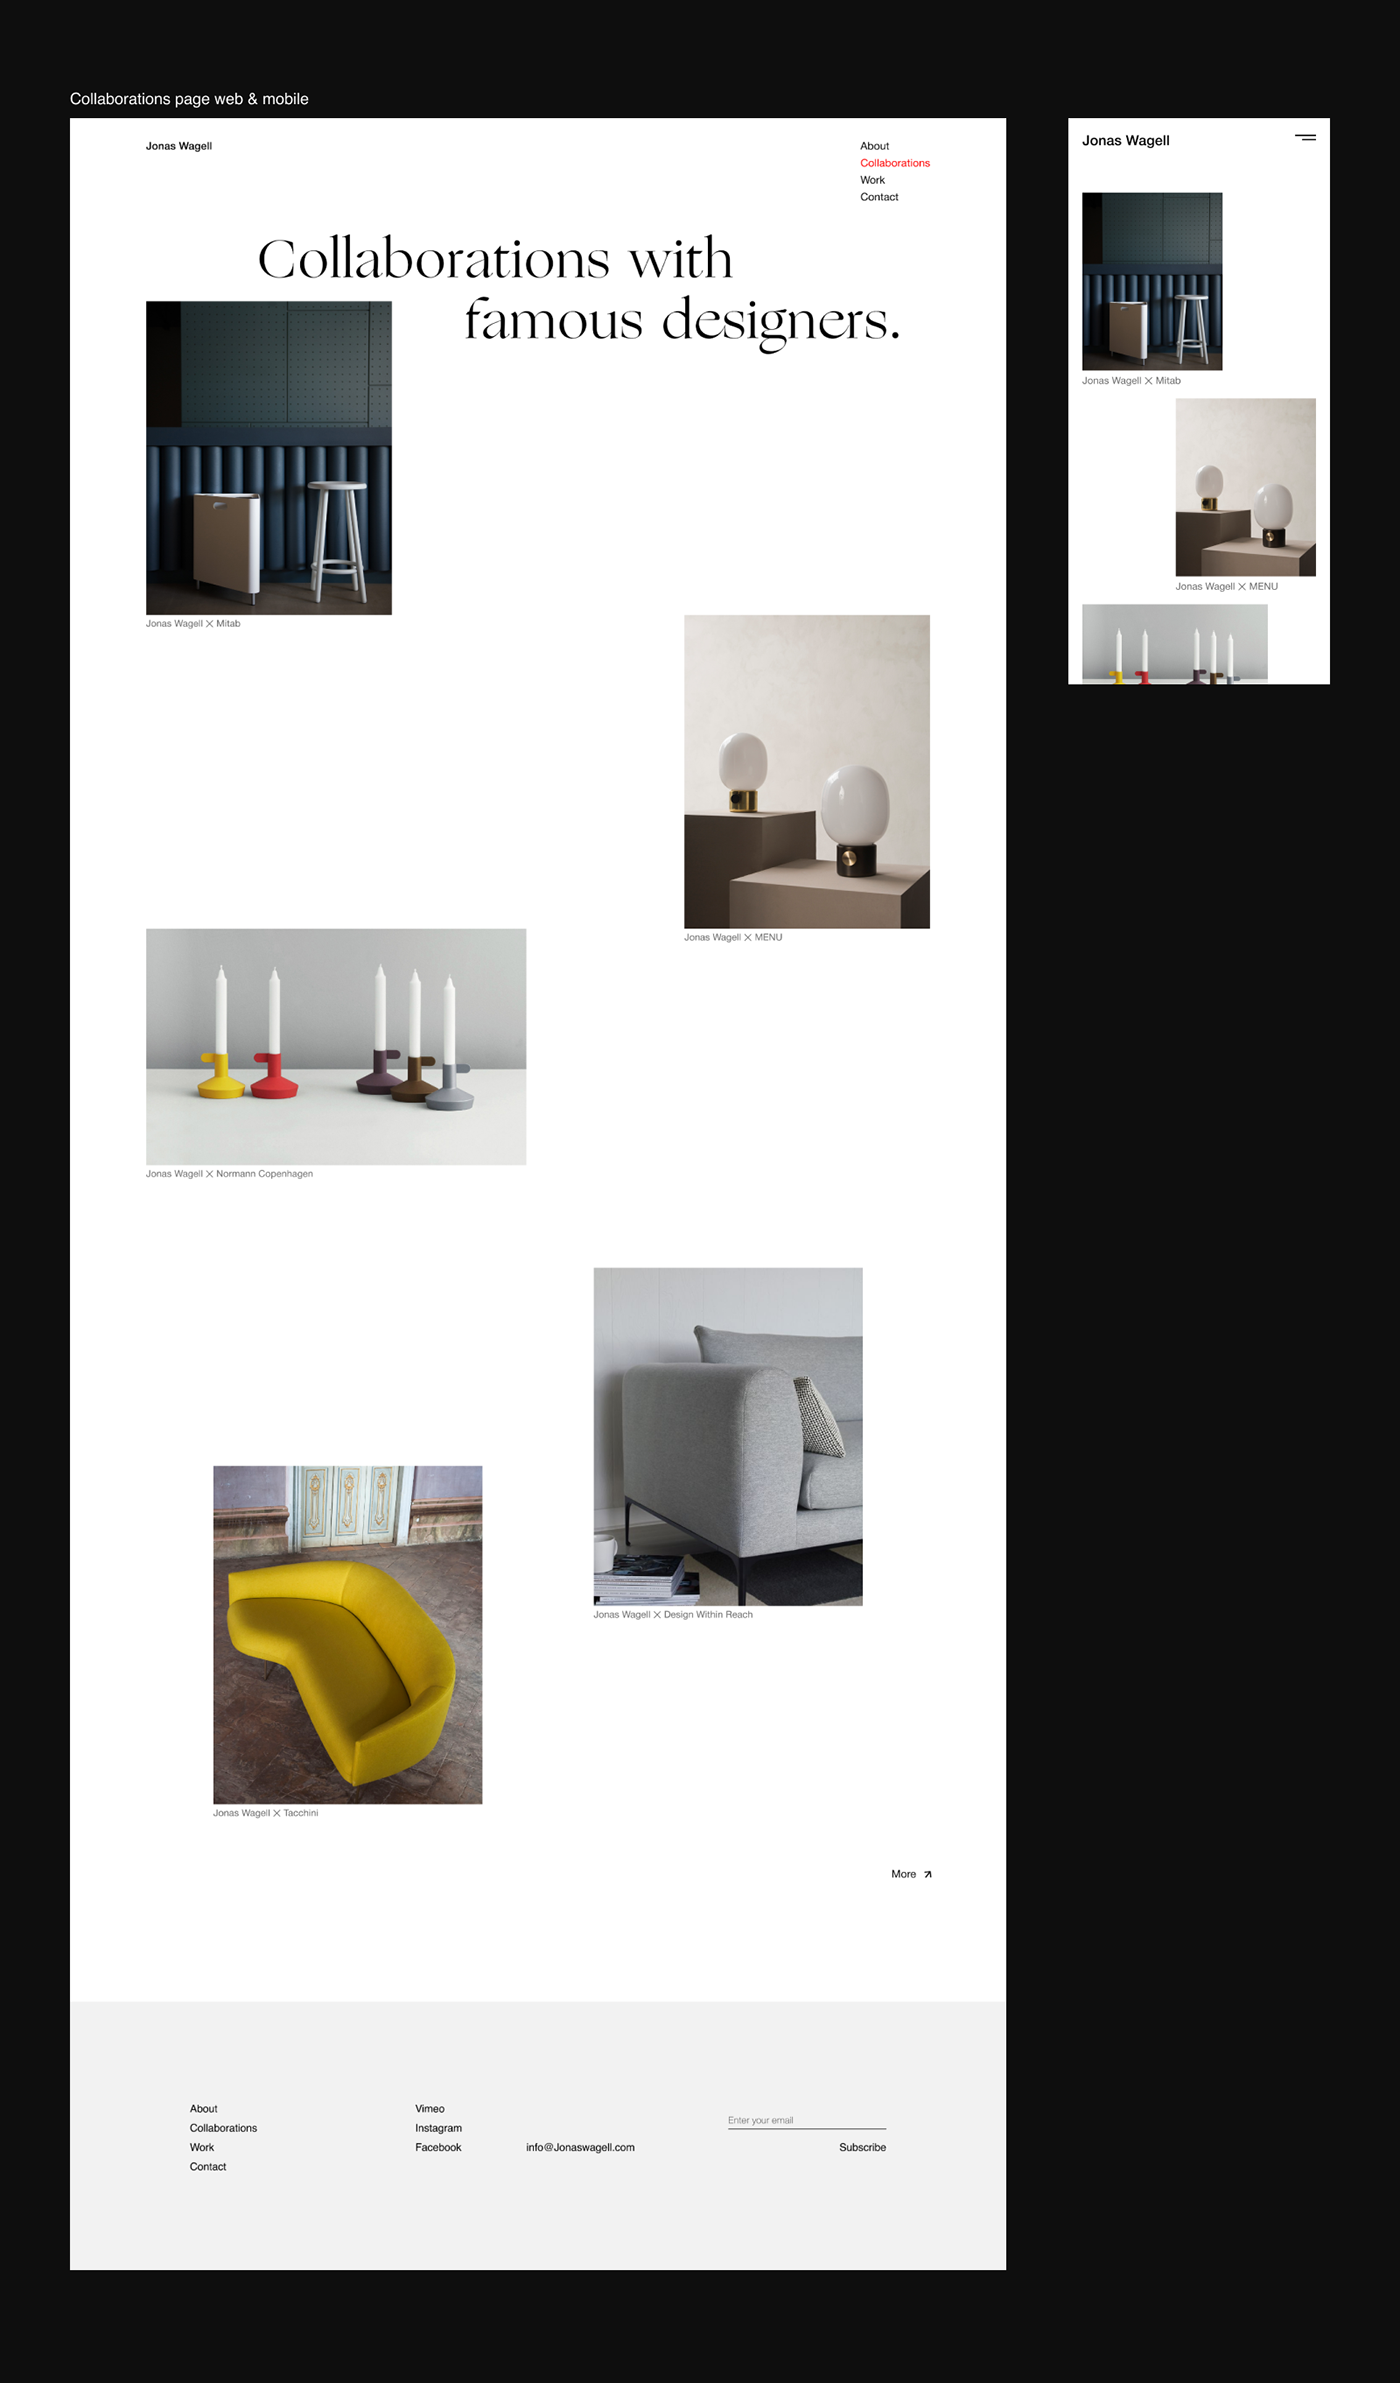 concept design furniture Interior Minimalism mobile UI ux Web Webdesign